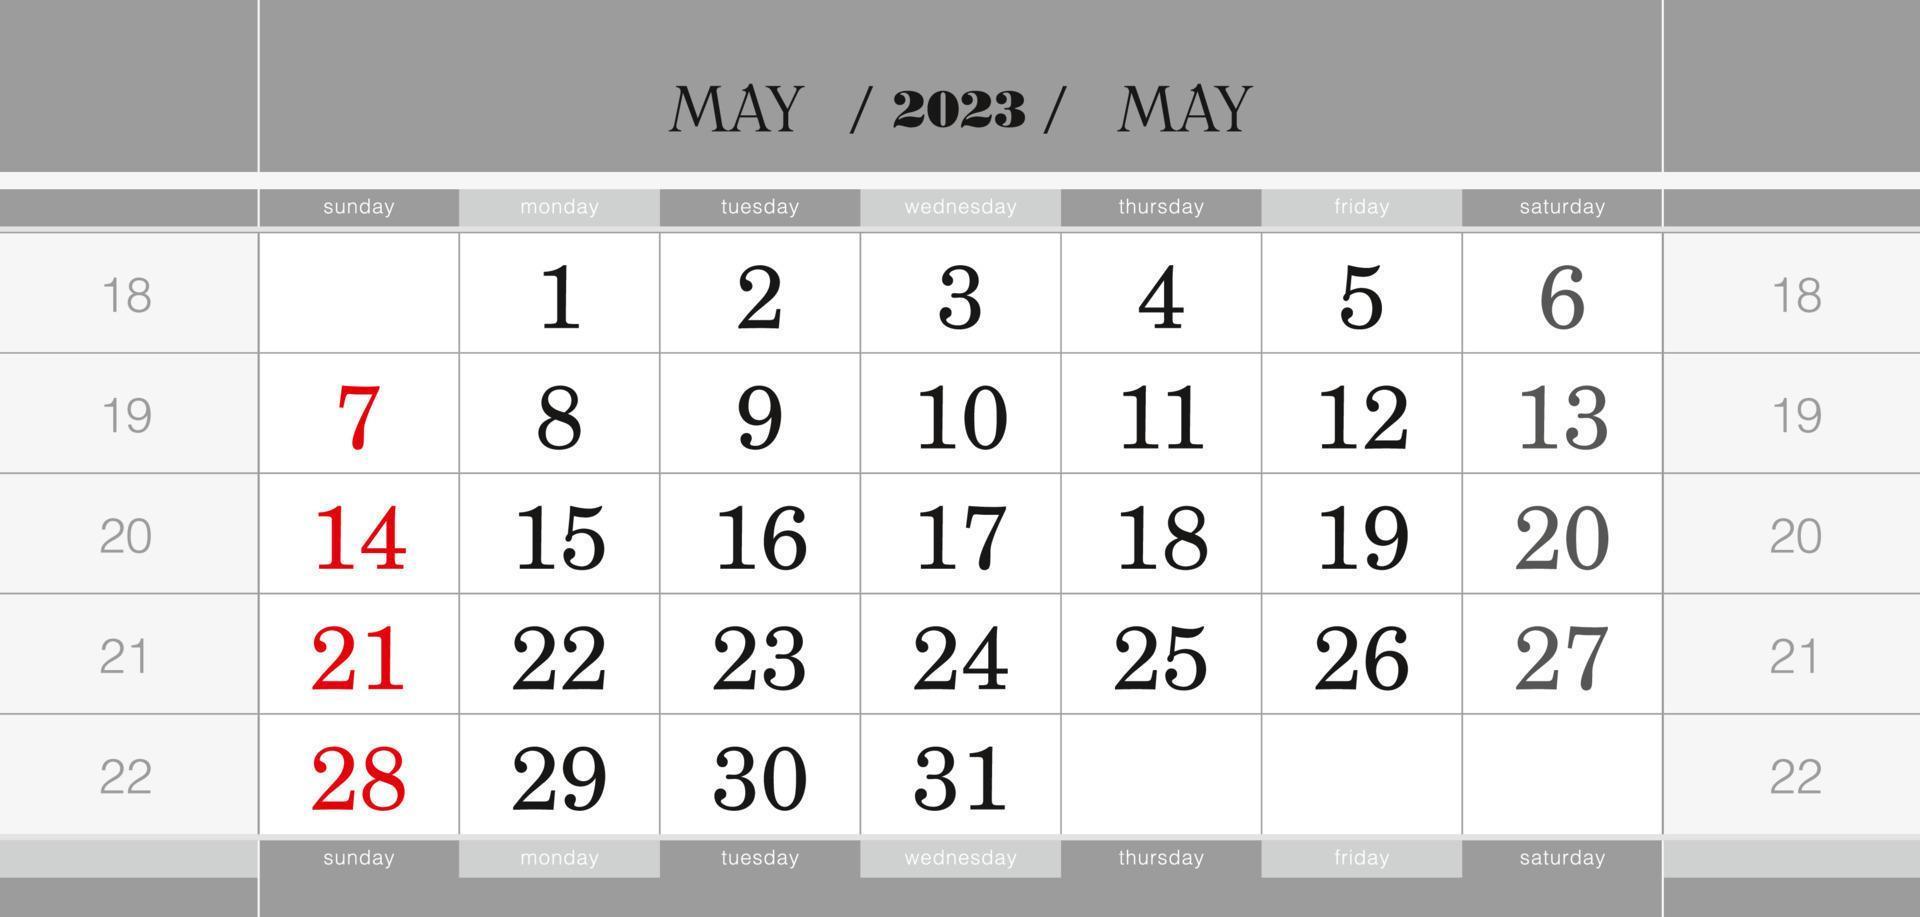 bloque de calendario trimestral de mayo de 2023. calendario de pared en inglés, la semana comienza el domingo. vector